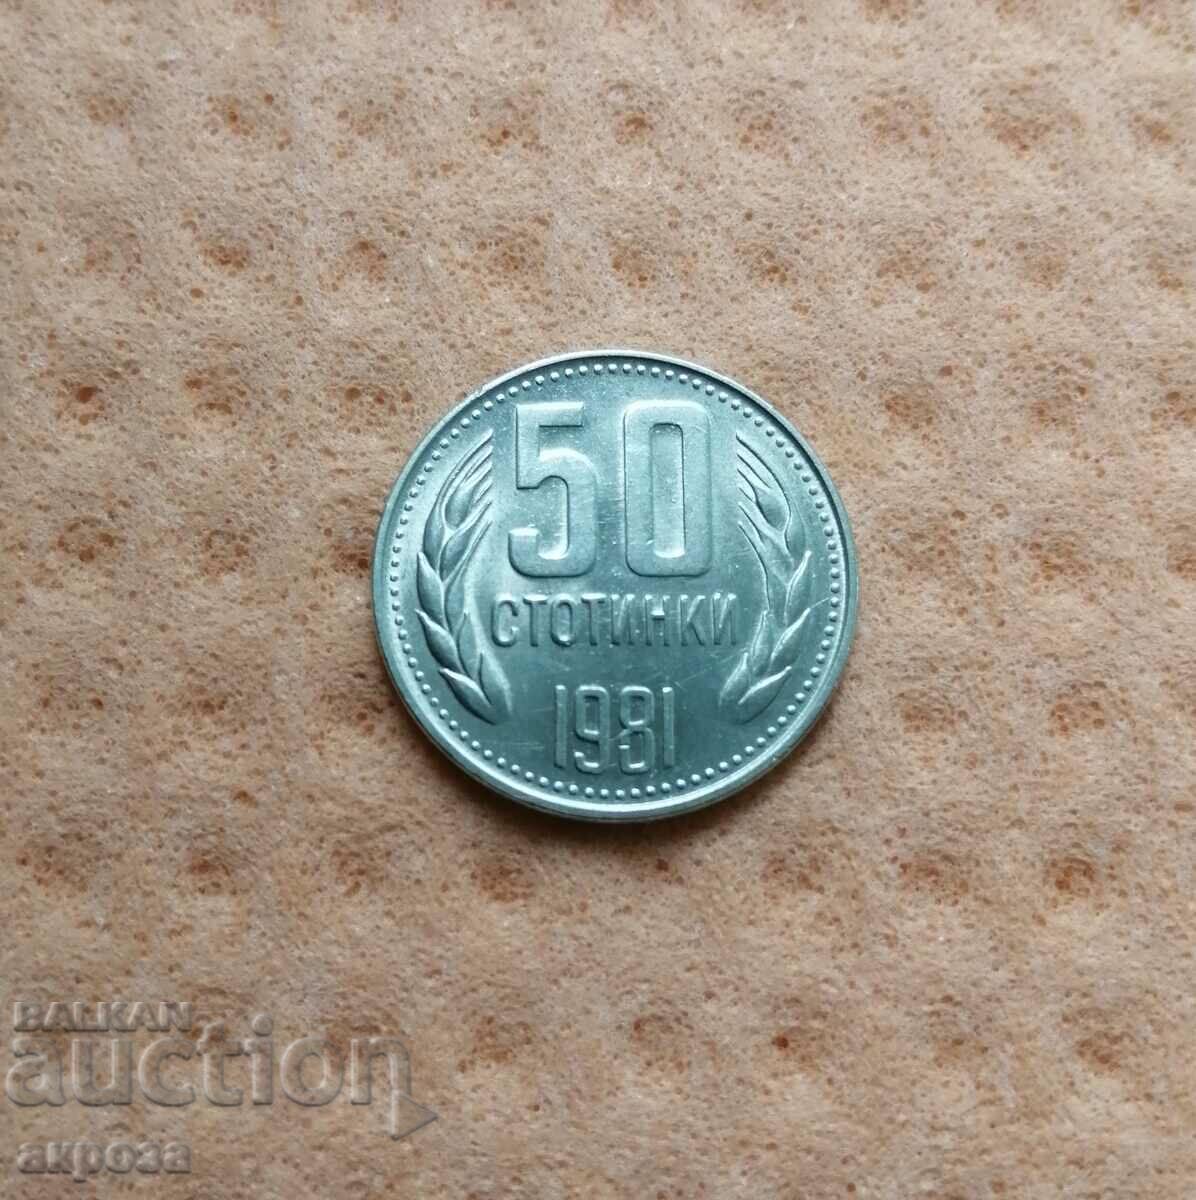 50 σεντ 1981 σε ποιότητα